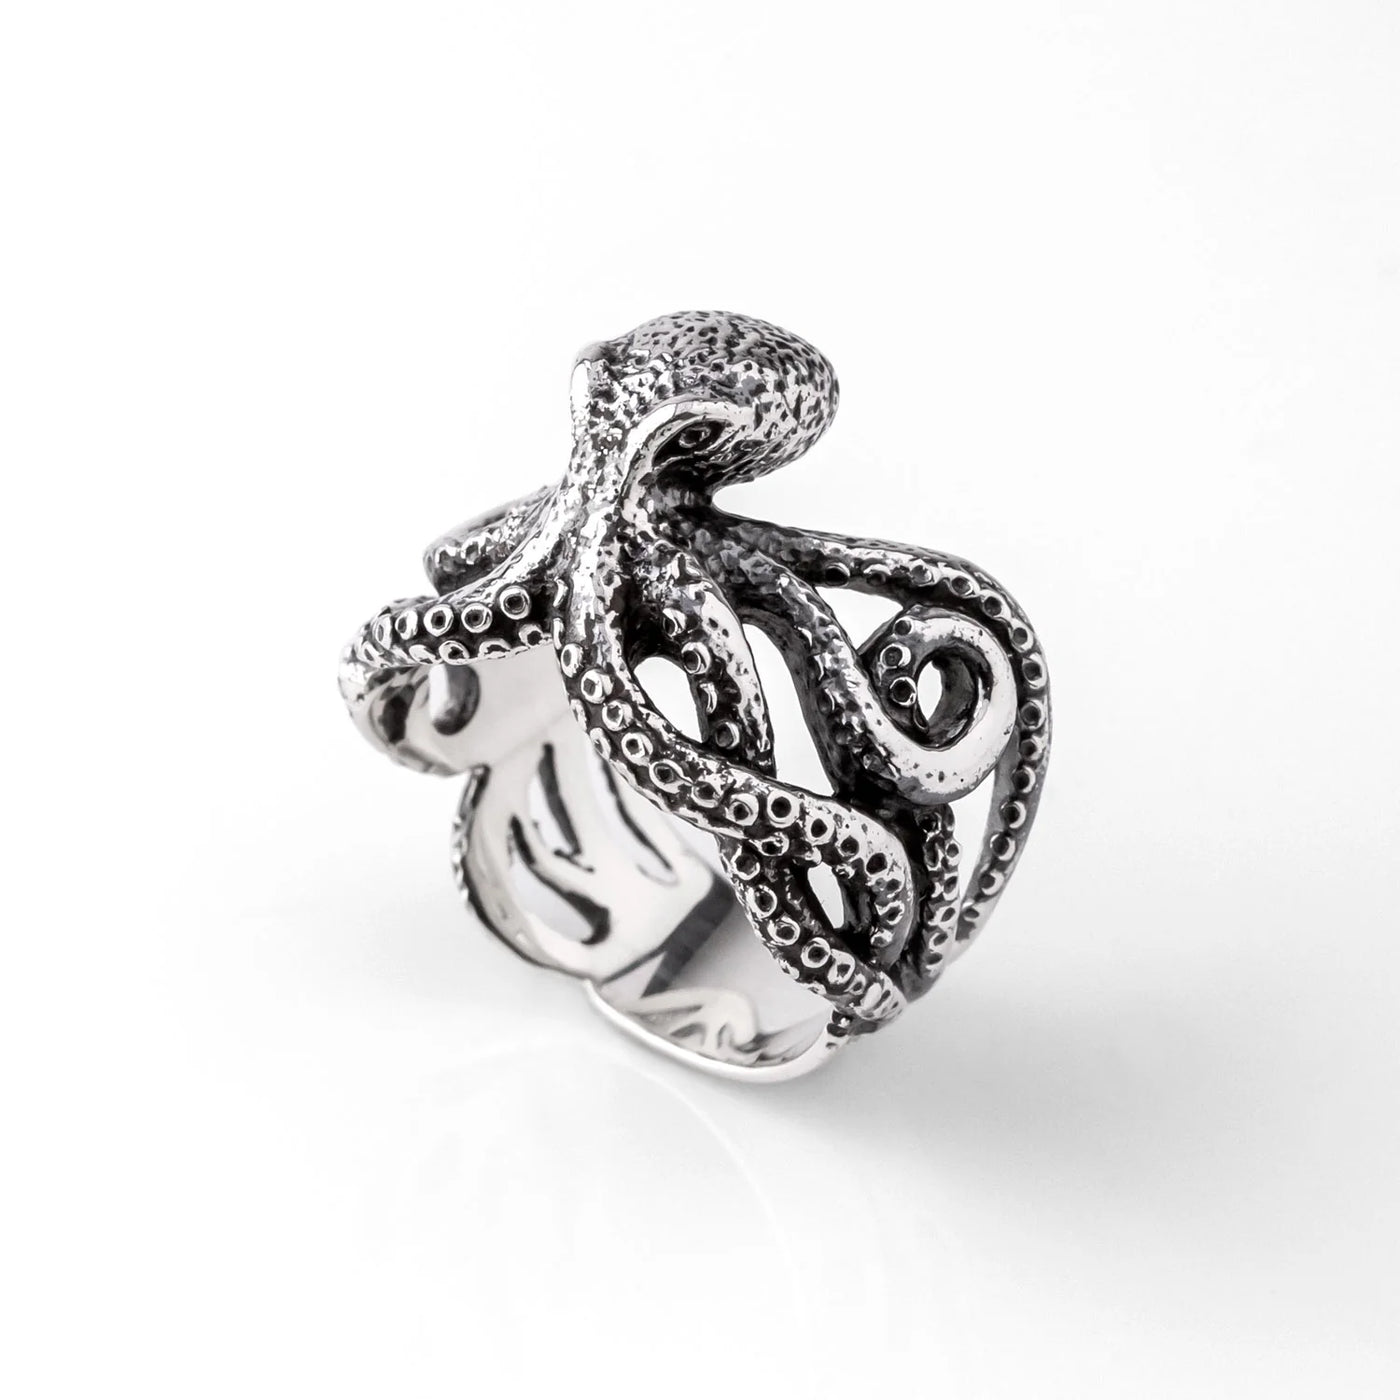 Nick Von K Silver Octopus Ring